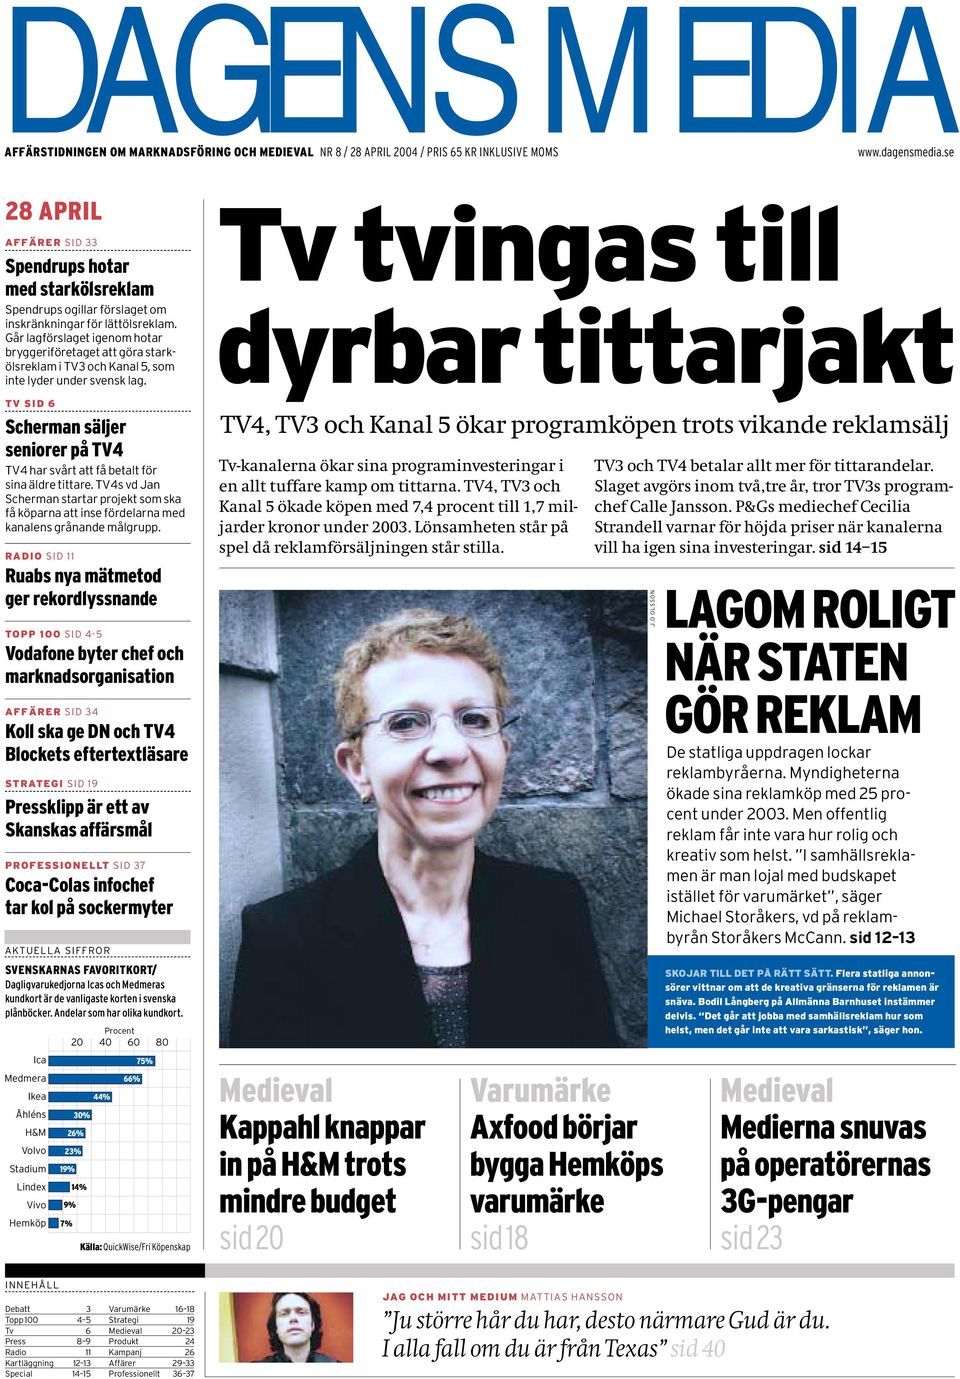 Går lagförslaget igenom hotar bryggeriföretaget att göra starkölsreklam i TV3 och Kanal 5, som inte lyder under svensk lag.